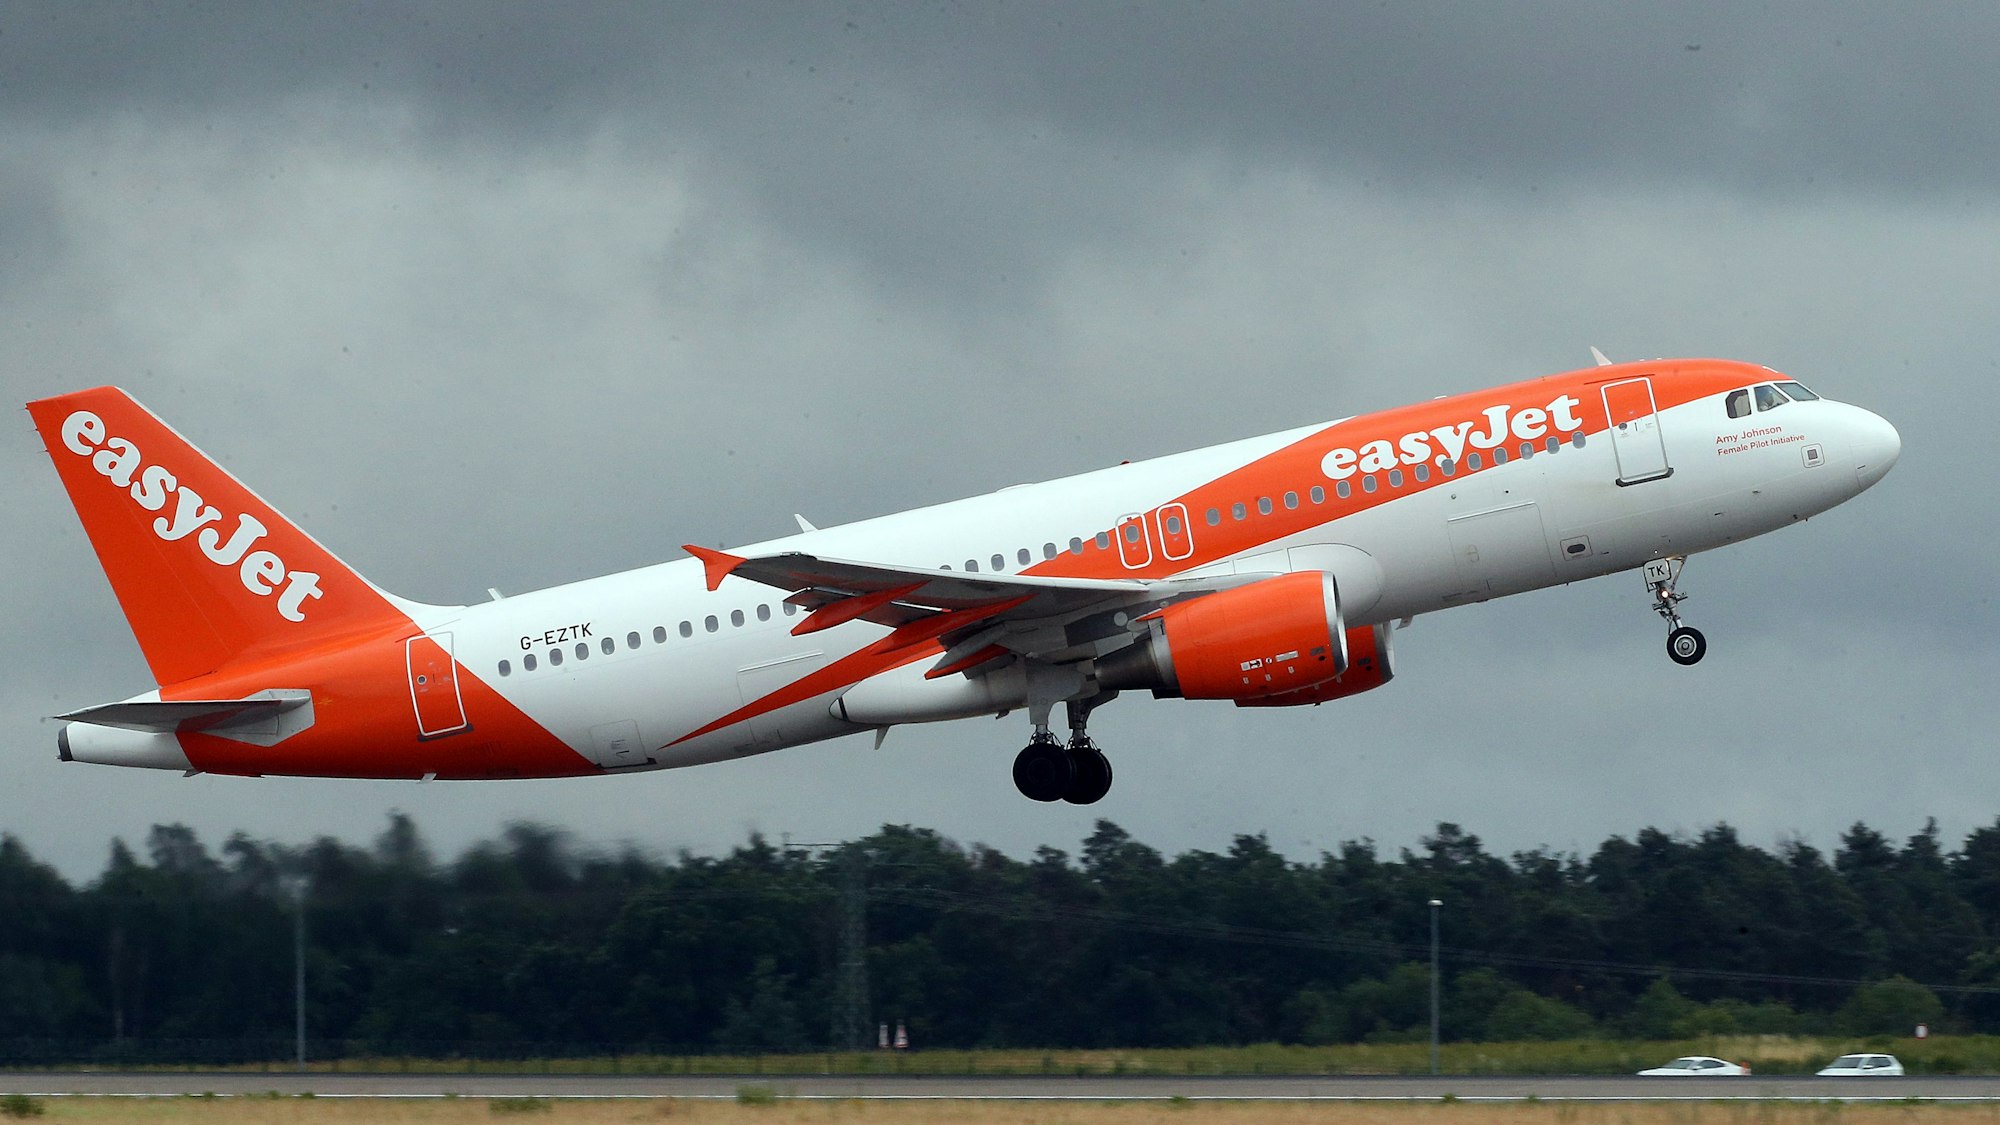 Ein Airbus A320 der britischen Fluggesellschaft Easyjet im Landeanflug während eines Unwetters. Das Flugzeug ist weiß-orange lackiert. (Symbolbild)